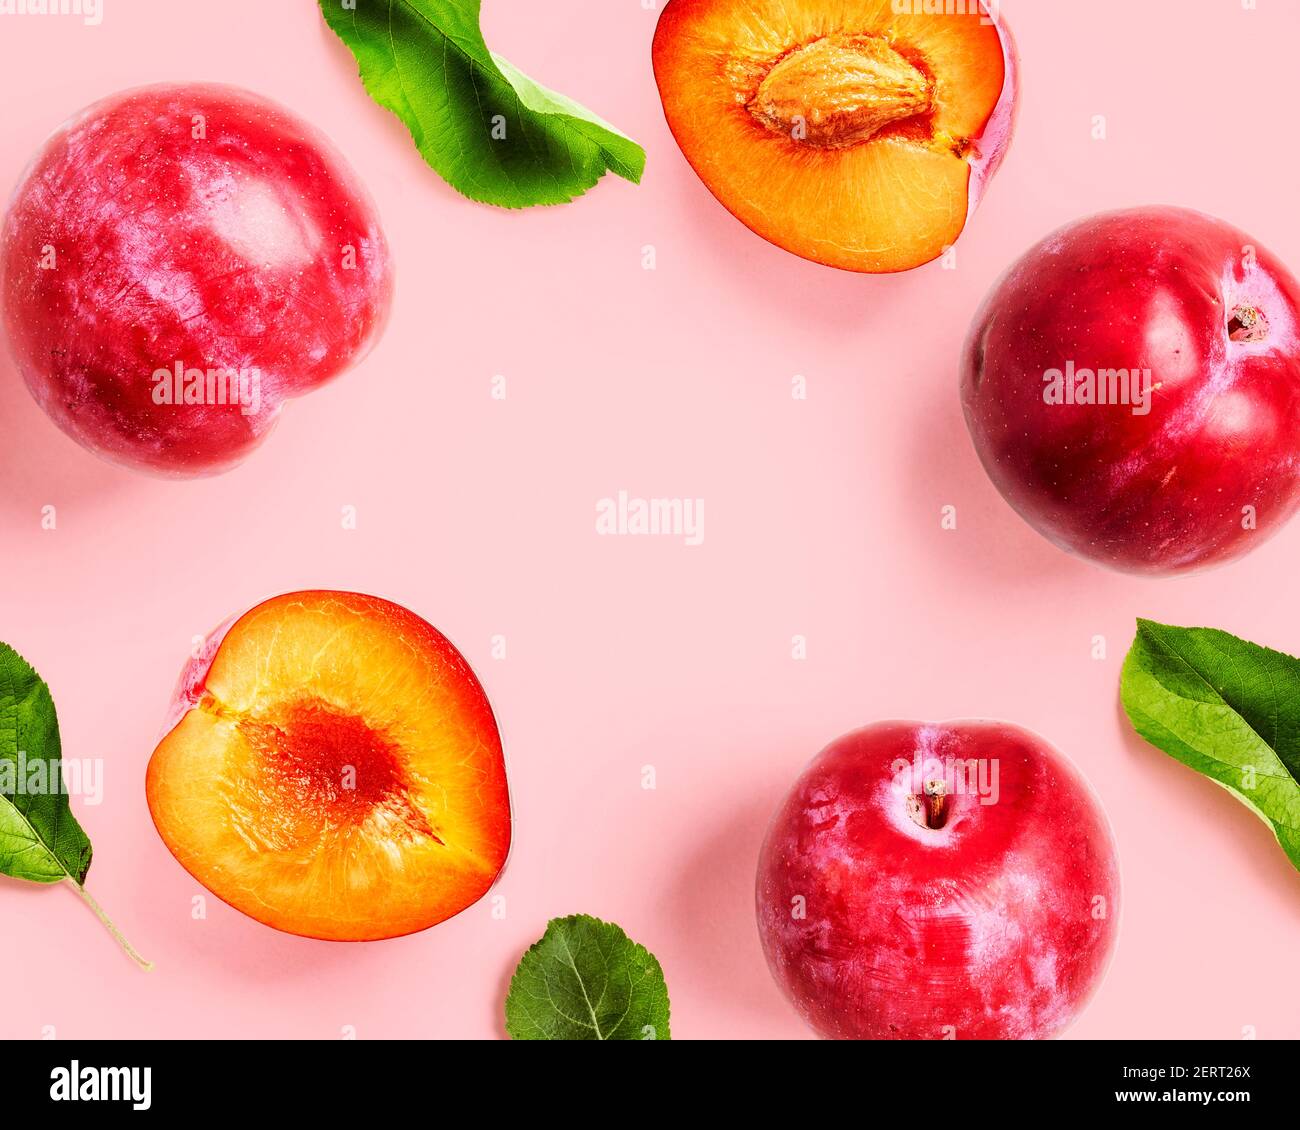 Layout creativo di frutti di prugna rossi e biglietto di auguri su sfondo rosa. Concetto di cibo sano e di dieta. Composizione di frutta fresca estiva e ira Foto Stock